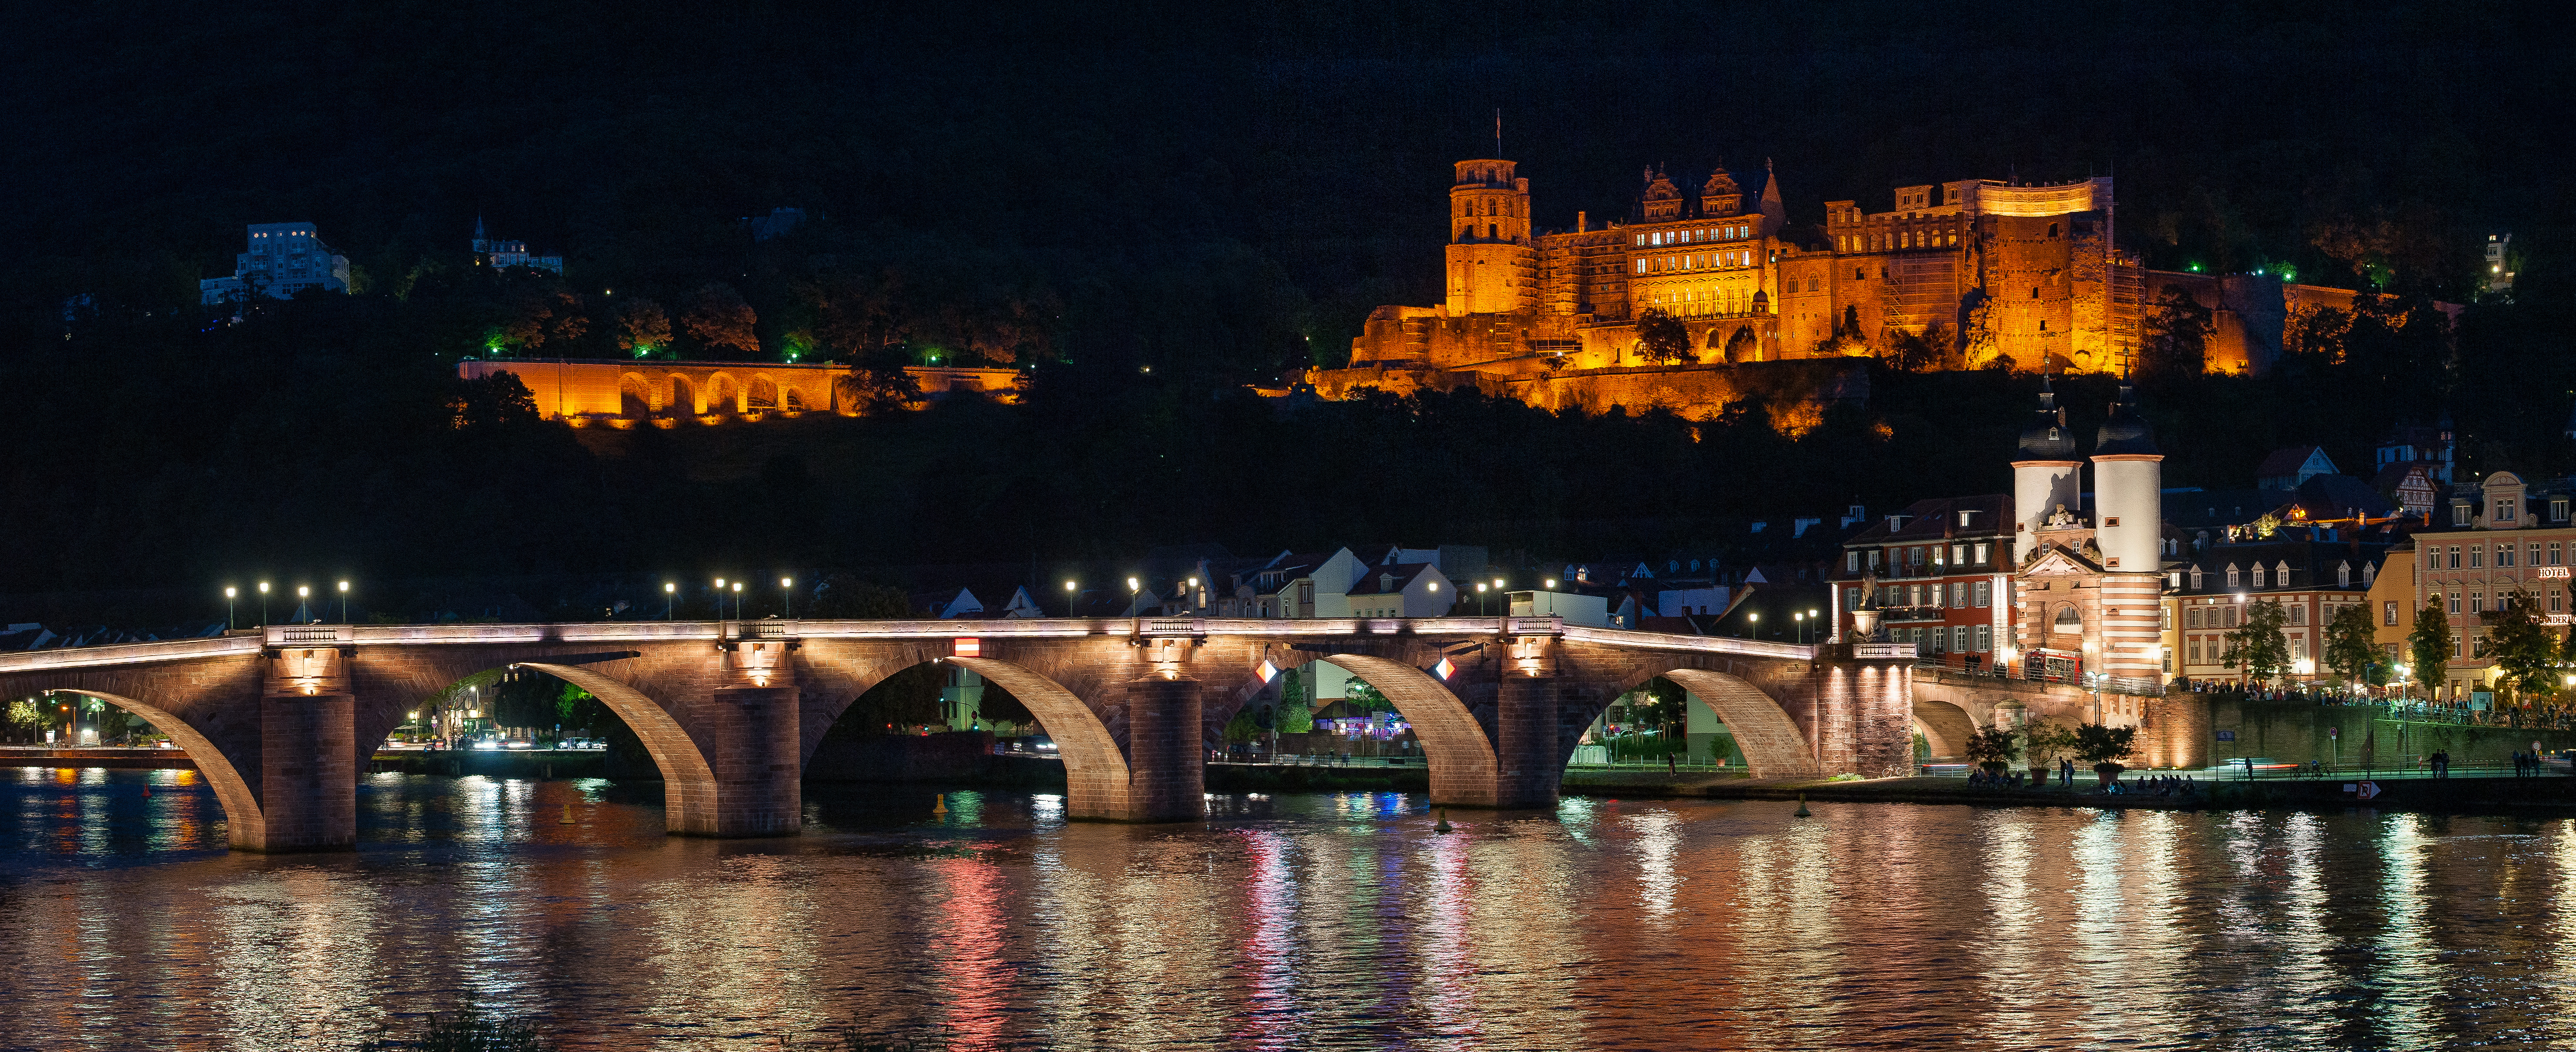 Обои Heidelberg at night мостовые арки подсветка на рабочий стол